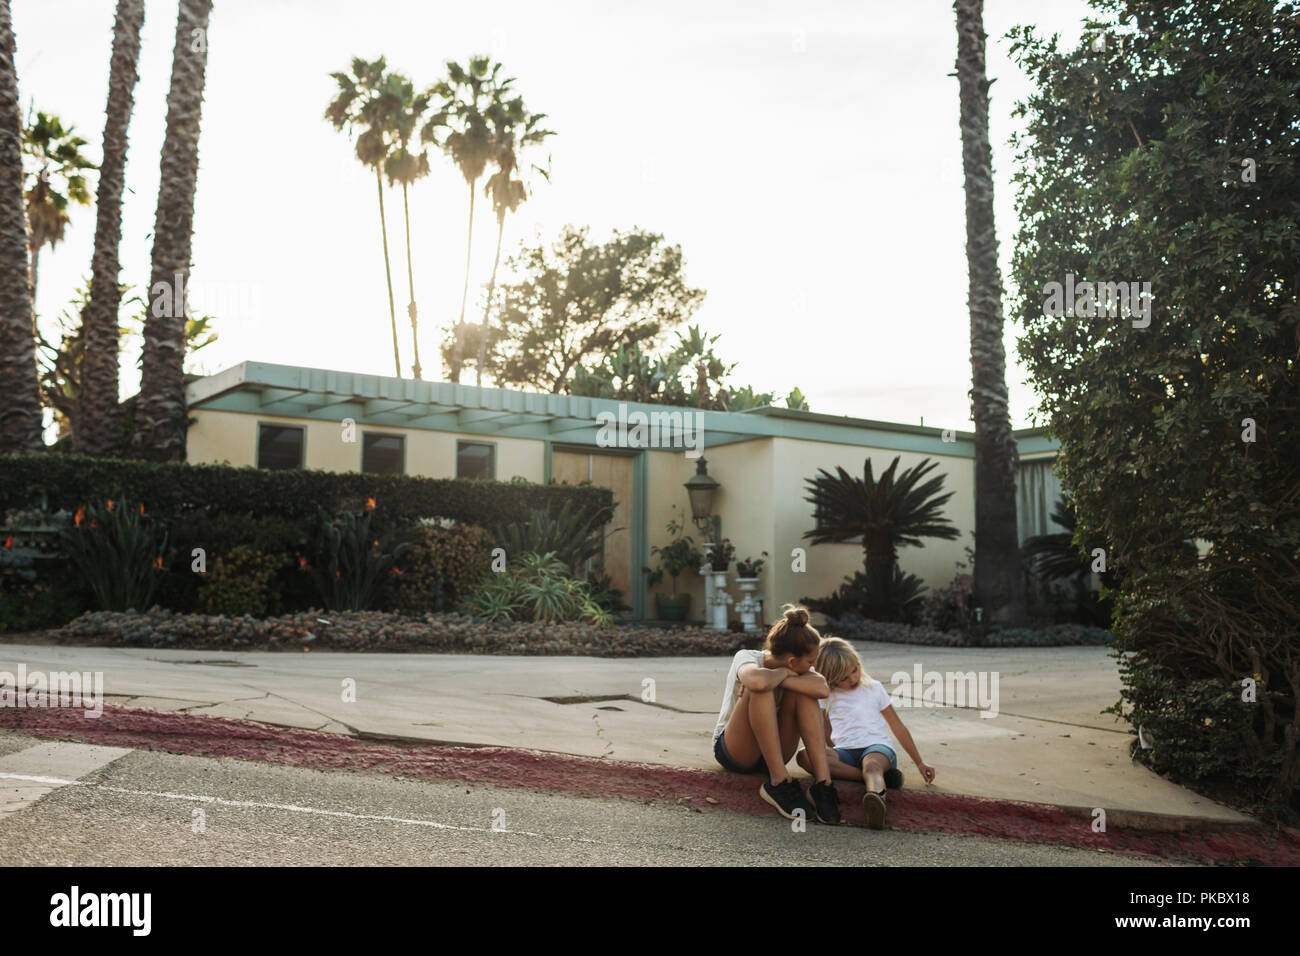 Deux jeunes filles s'asseoir sur un trottoir de la rue à l'extérieur d'une maison, Los Angeles, Californie, États-Unis d'Amérique Banque D'Images